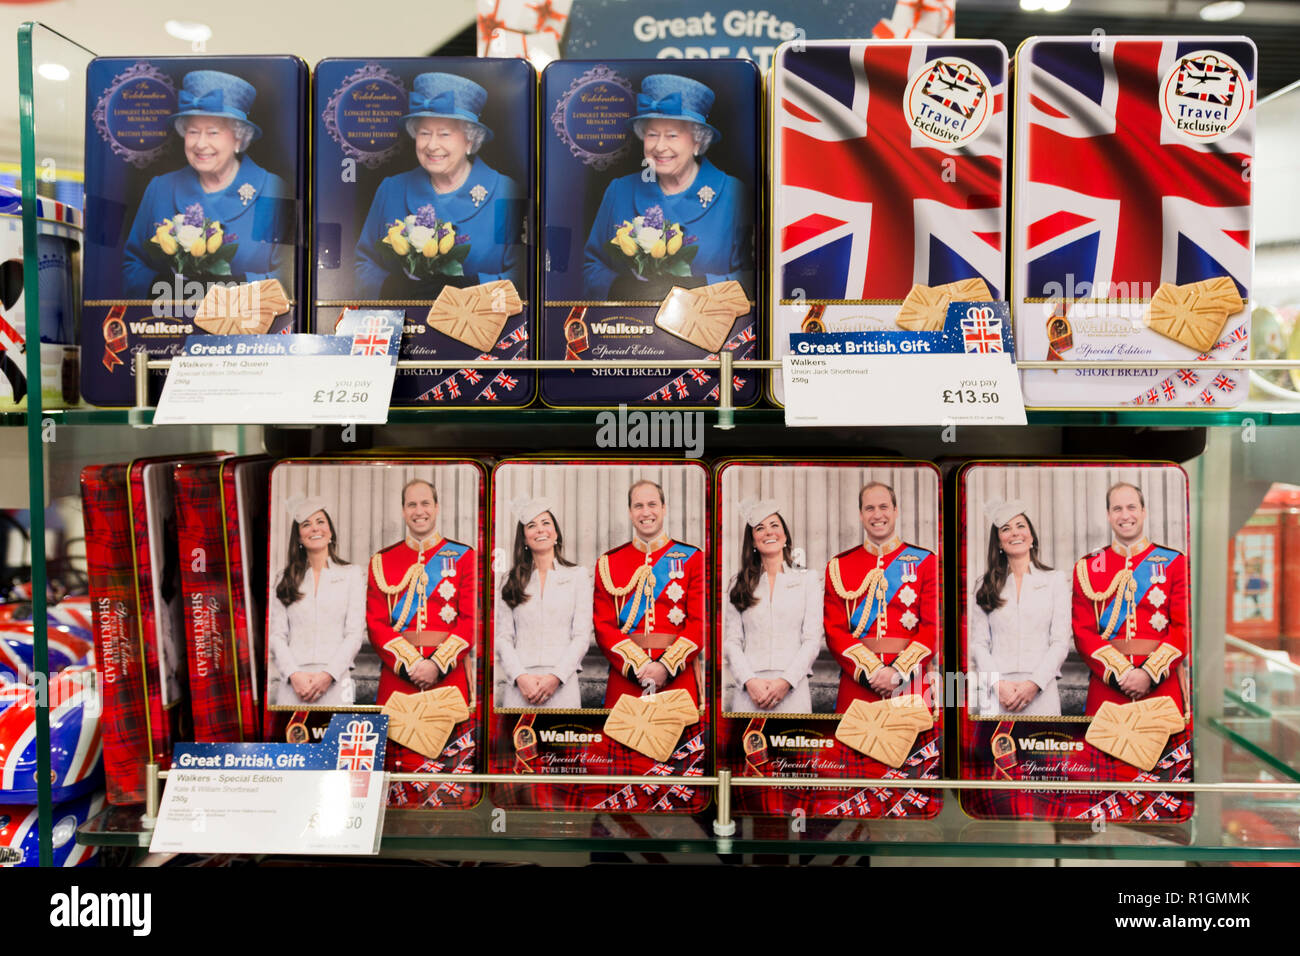 Boîtes de cookies avec motifs britannique. En Franchise. L''aéroport de Stansted. Witham, Essex. Angleterre, Royaume-Uni. Banque D'Images